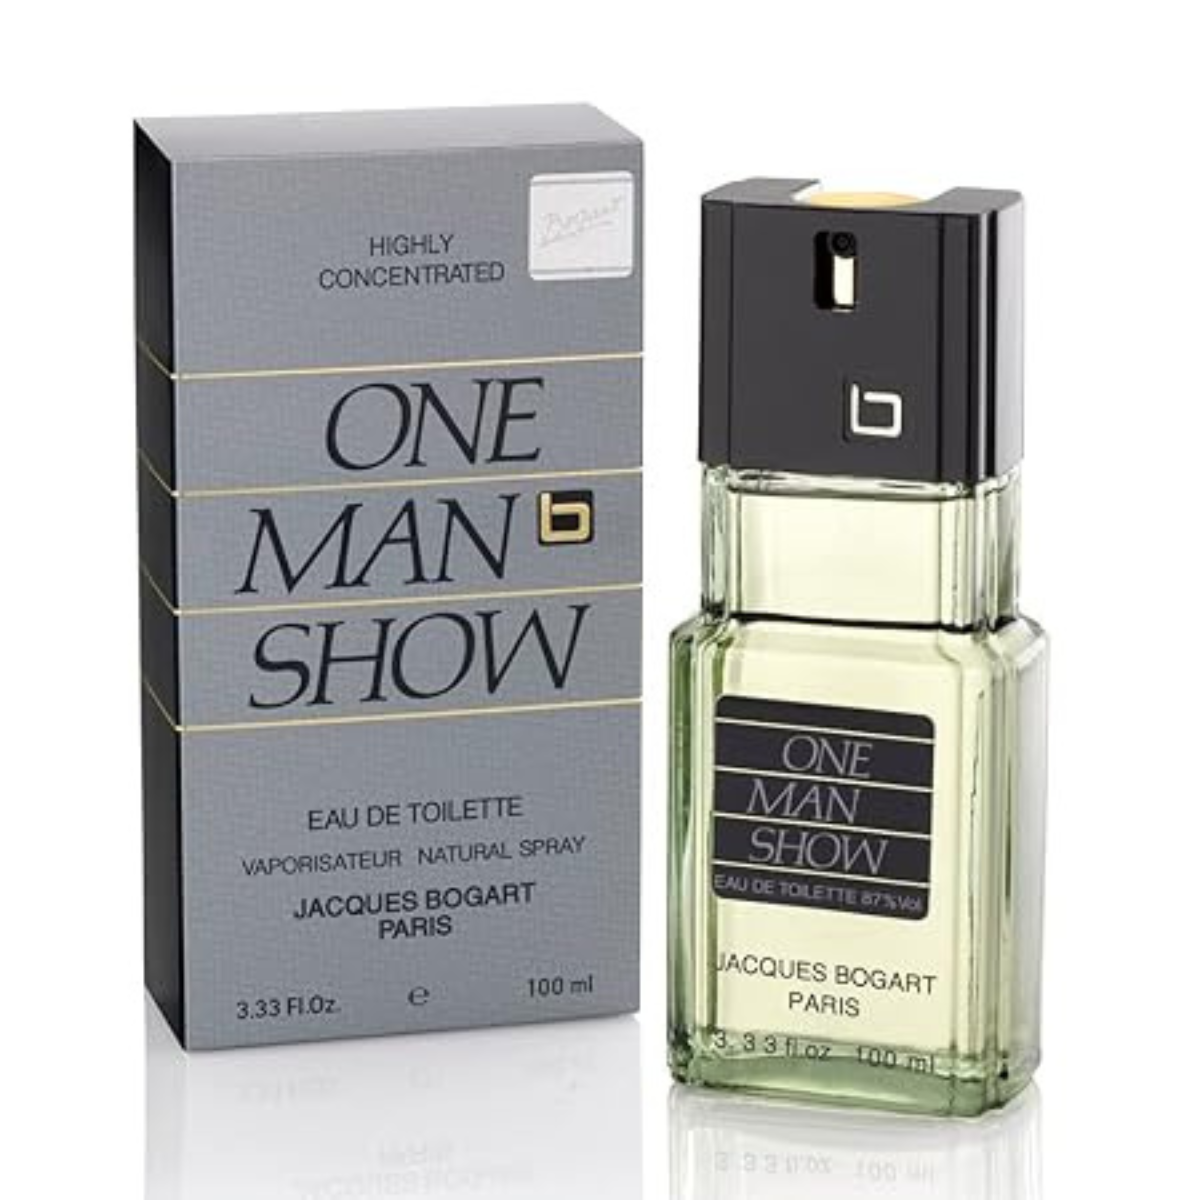 Jacques Bogart One Man Show 100 ml EDT for men perfume